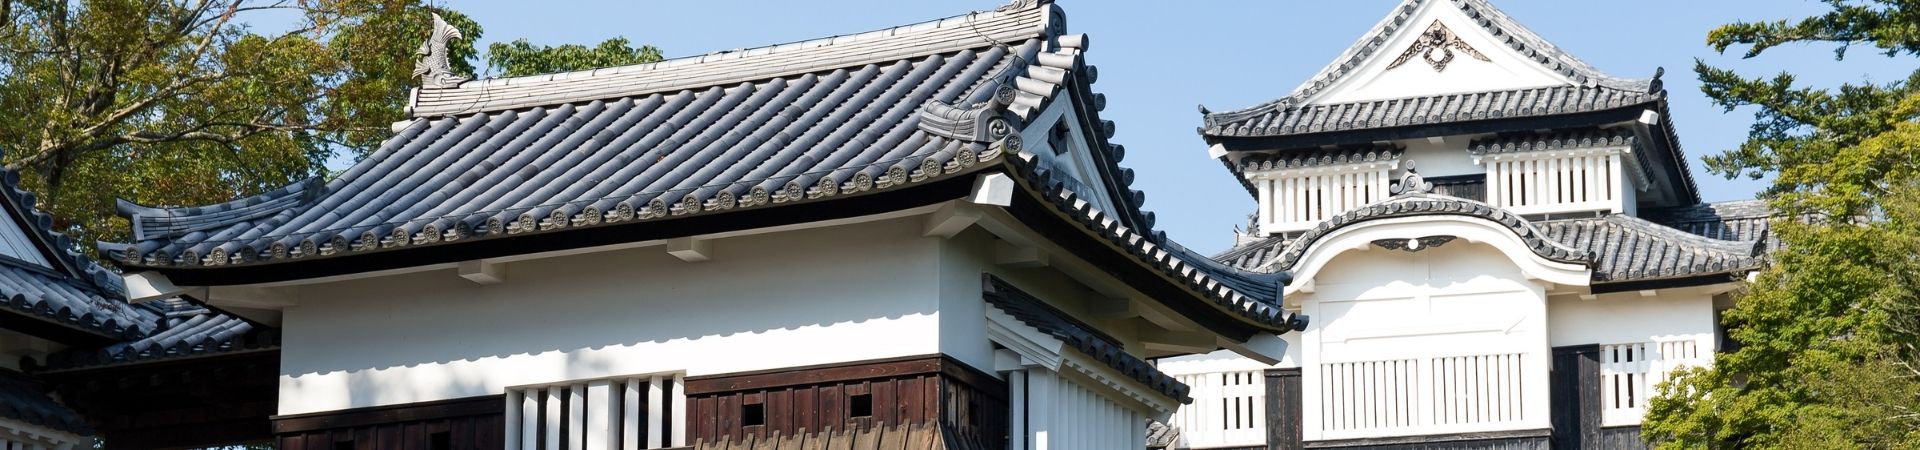 The Four Corners of Shikoku